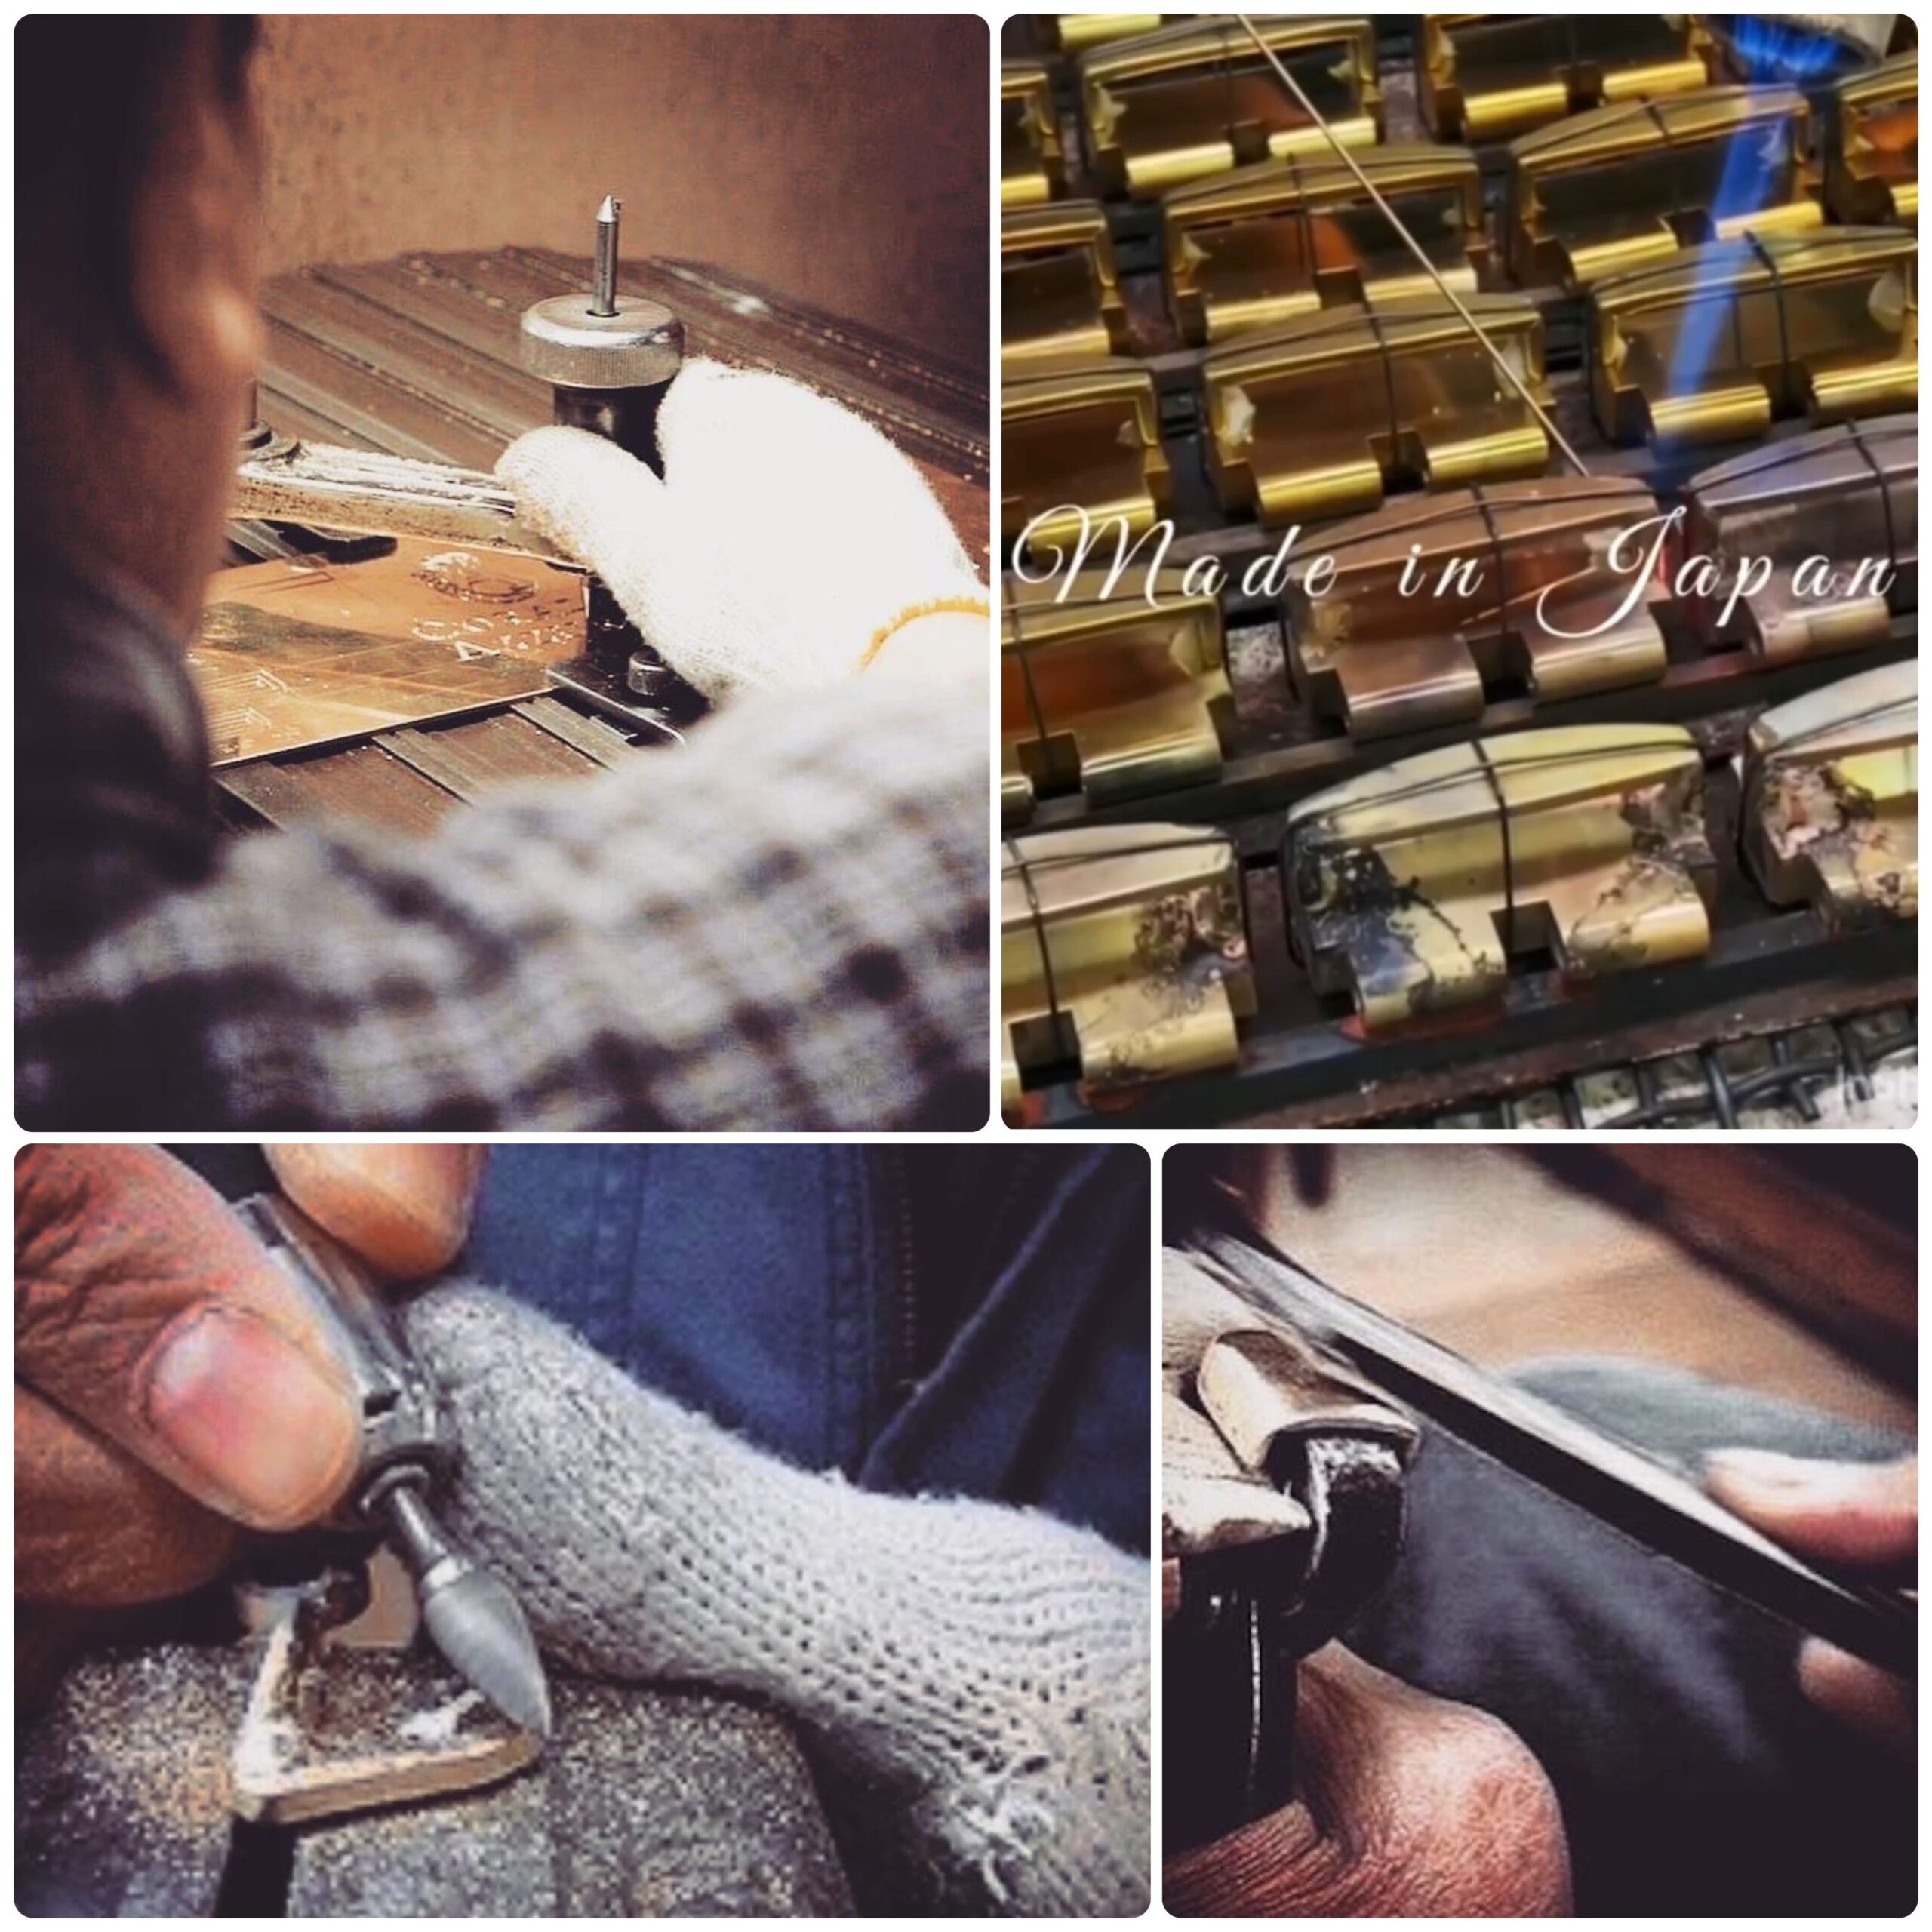 歴史を刻んだ道具と職人の技術、誰にも真似できないモノ作りがここに。ファッション、アパレル、雑貨、ブランドロゴ、ネーム入りオリジナルアクセサリー、イベントグッズをオーダーメイドで製作。

Our Craftsman Specialized in Pressing Technique